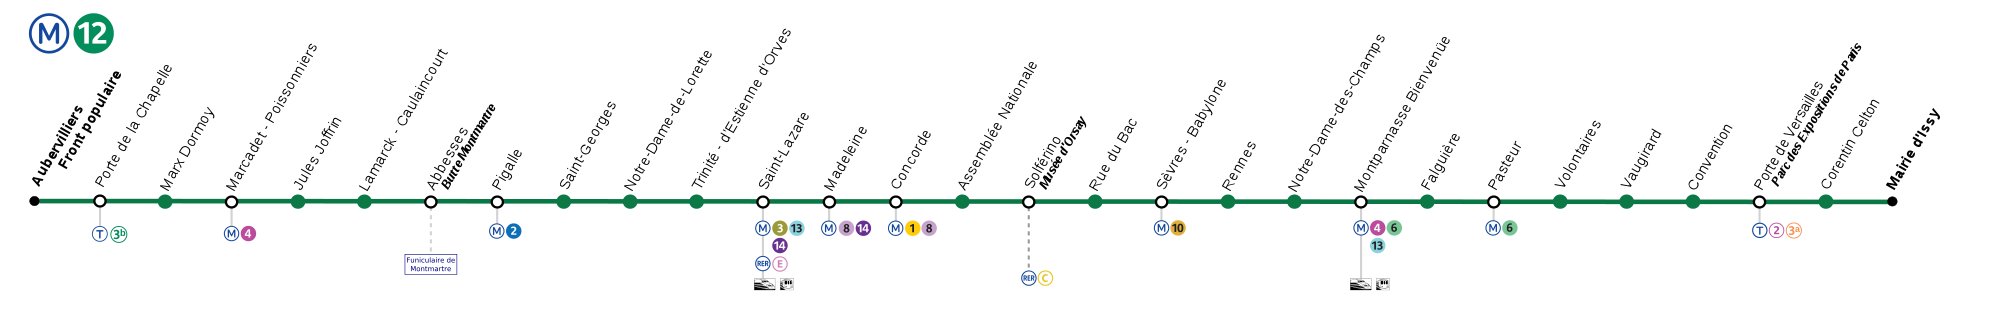 Paris Metro Line 12 Map | Paris-Metro-Map.info